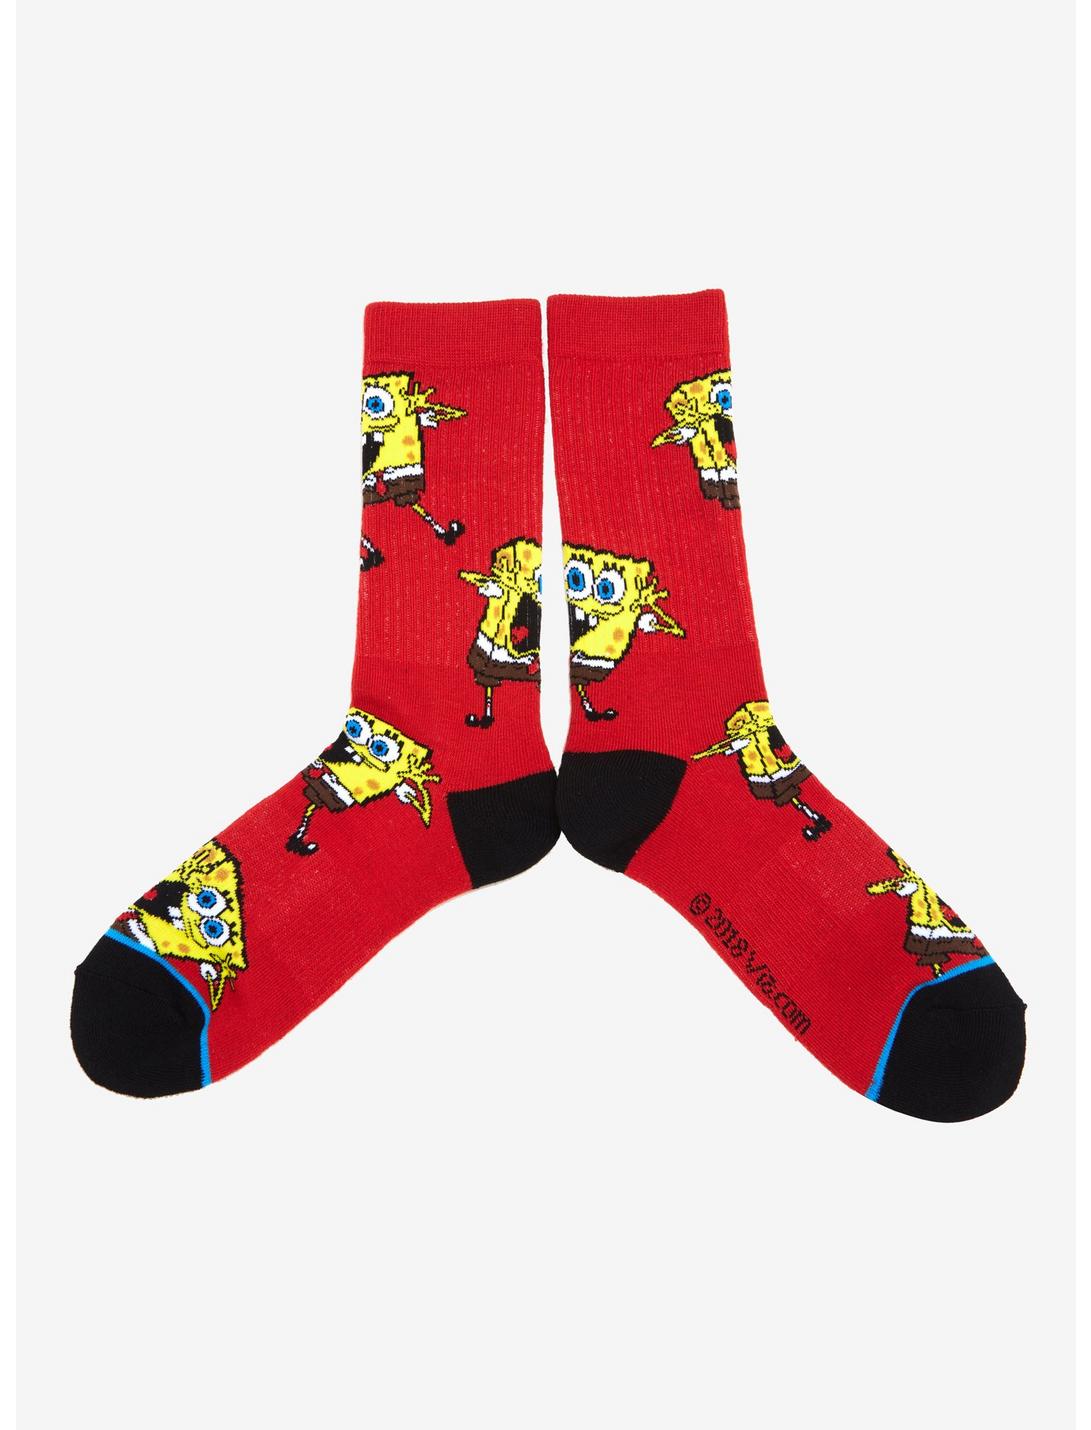 SpongeBob SquarePants Print Crew Socks, , hi-res